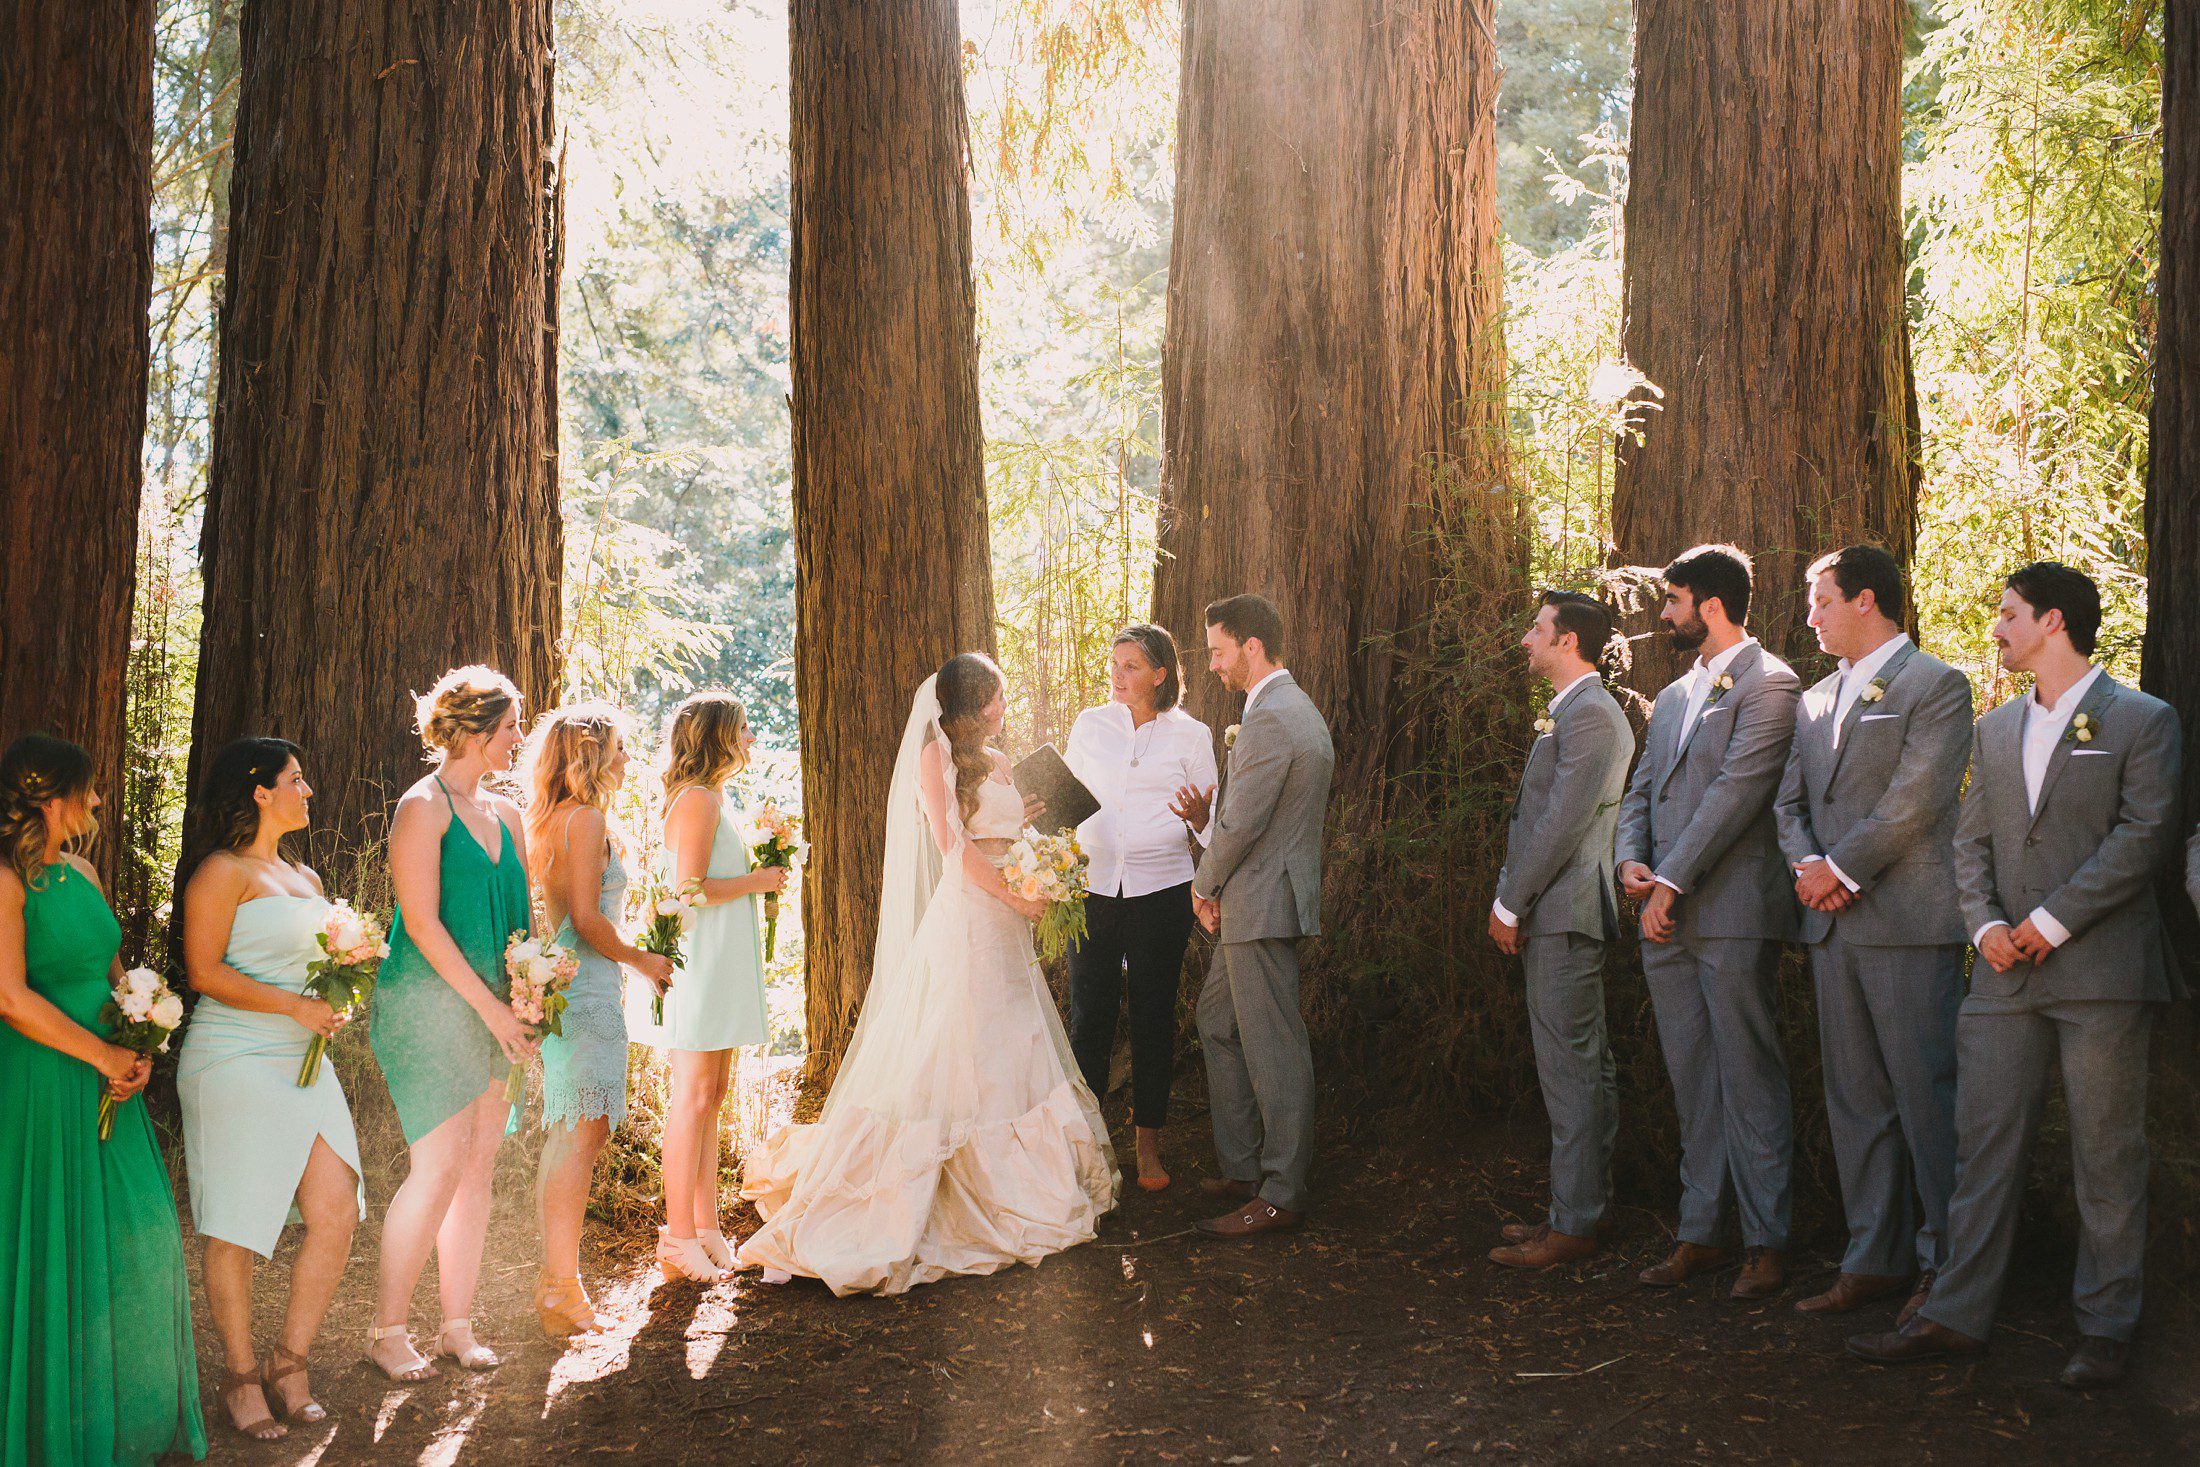 Roaring Camp Wedding in Redwoods